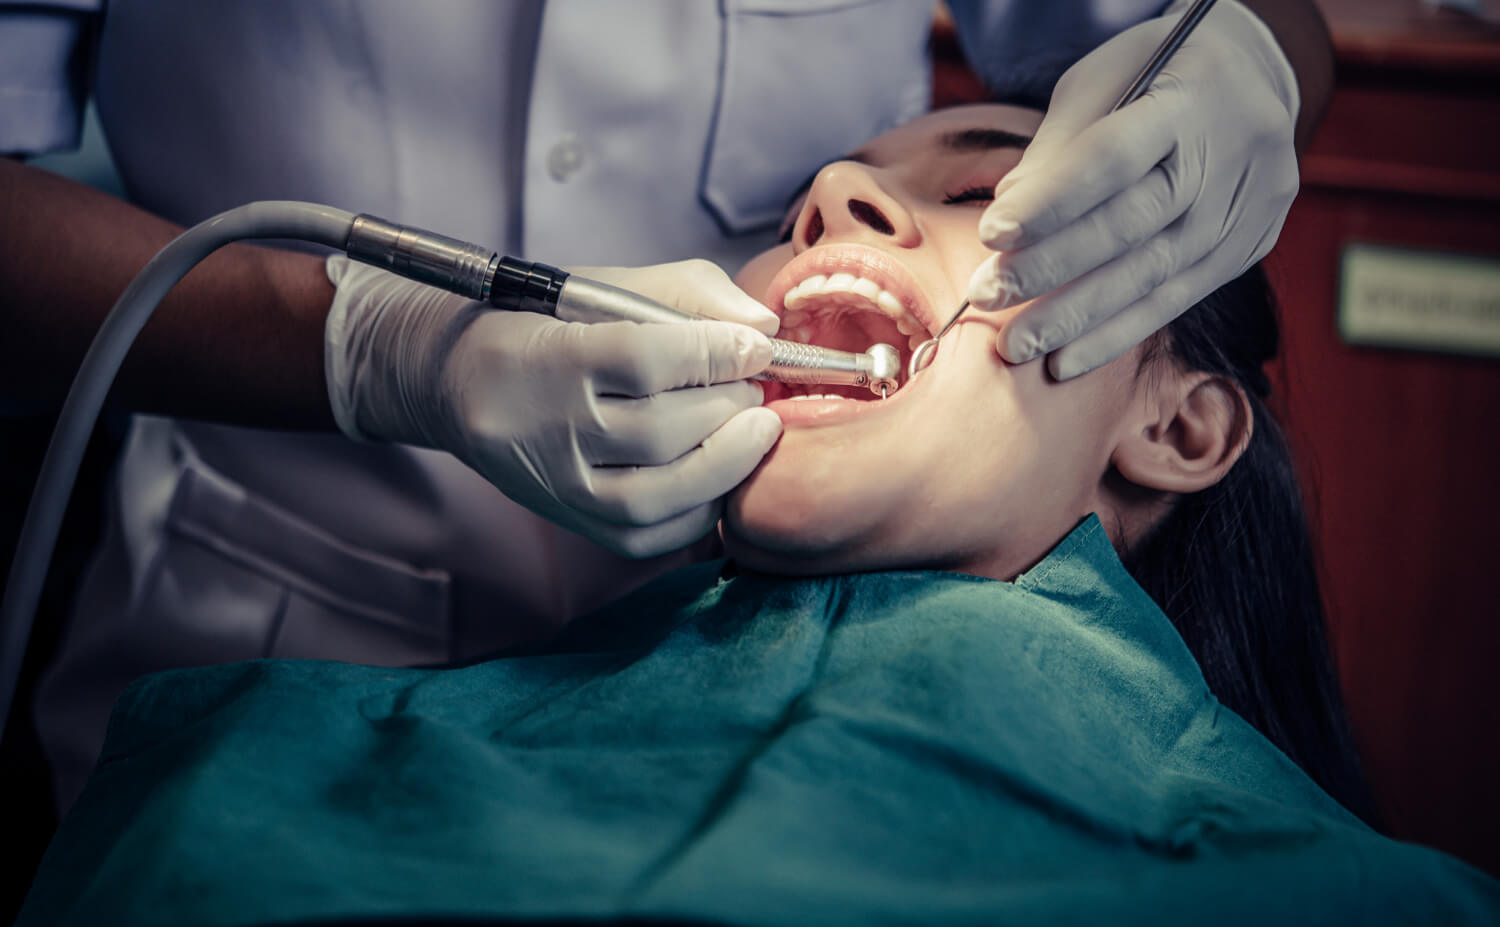 Absceso dental: definición, causas y tratamiento